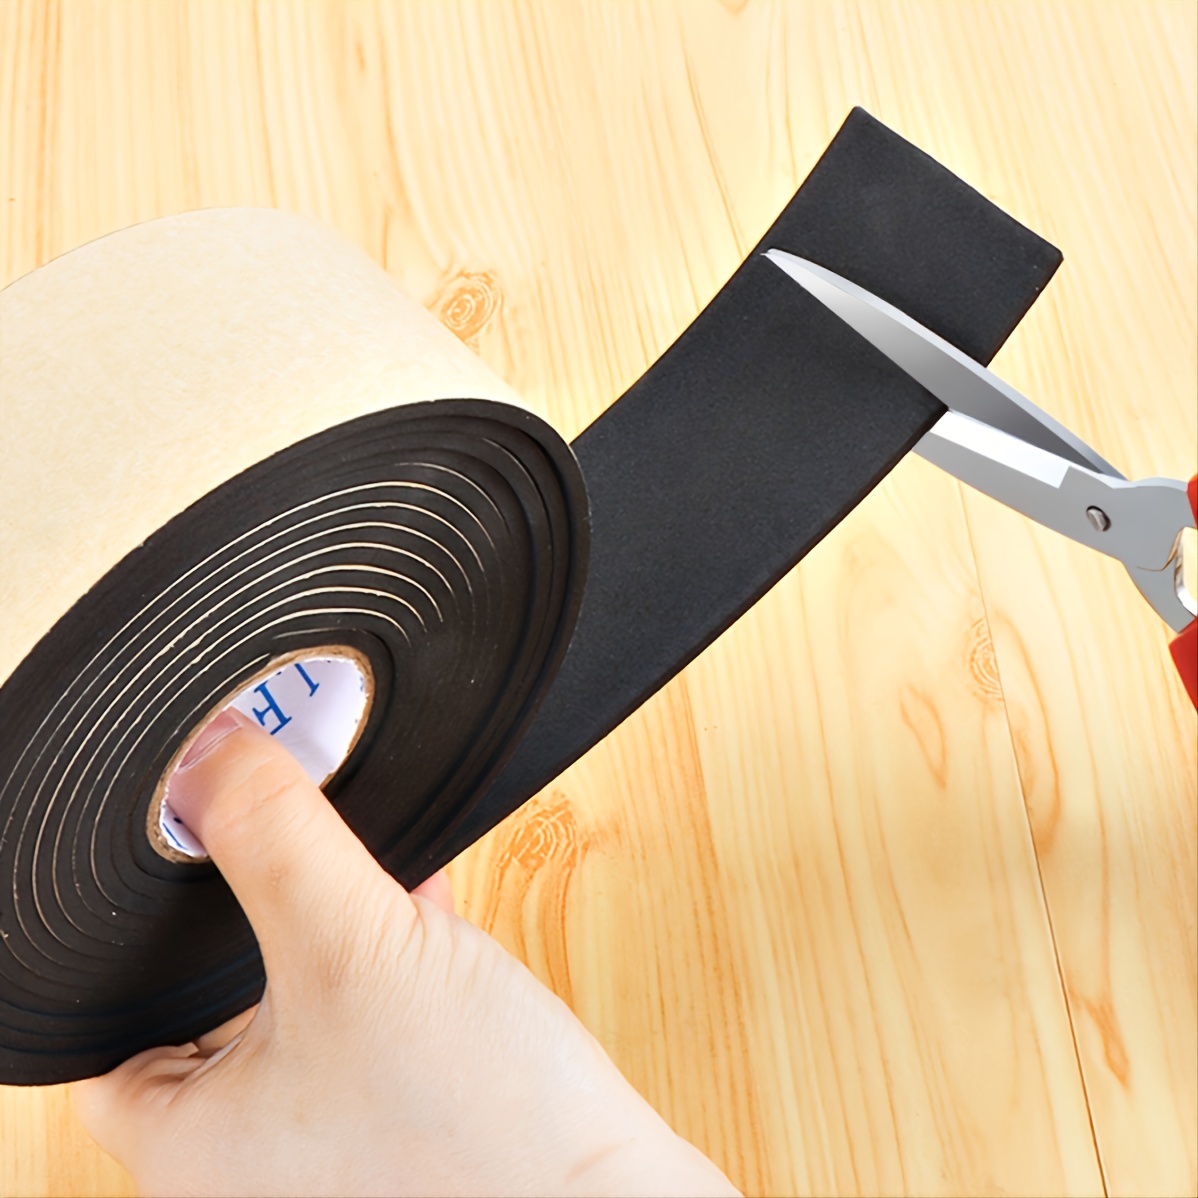 Shintop Cinta adhesiva de fieltro para bricolaje, rollo de tira de fieltro  resistente cortada en cualquier forma para proteger tu suelo de madera dura